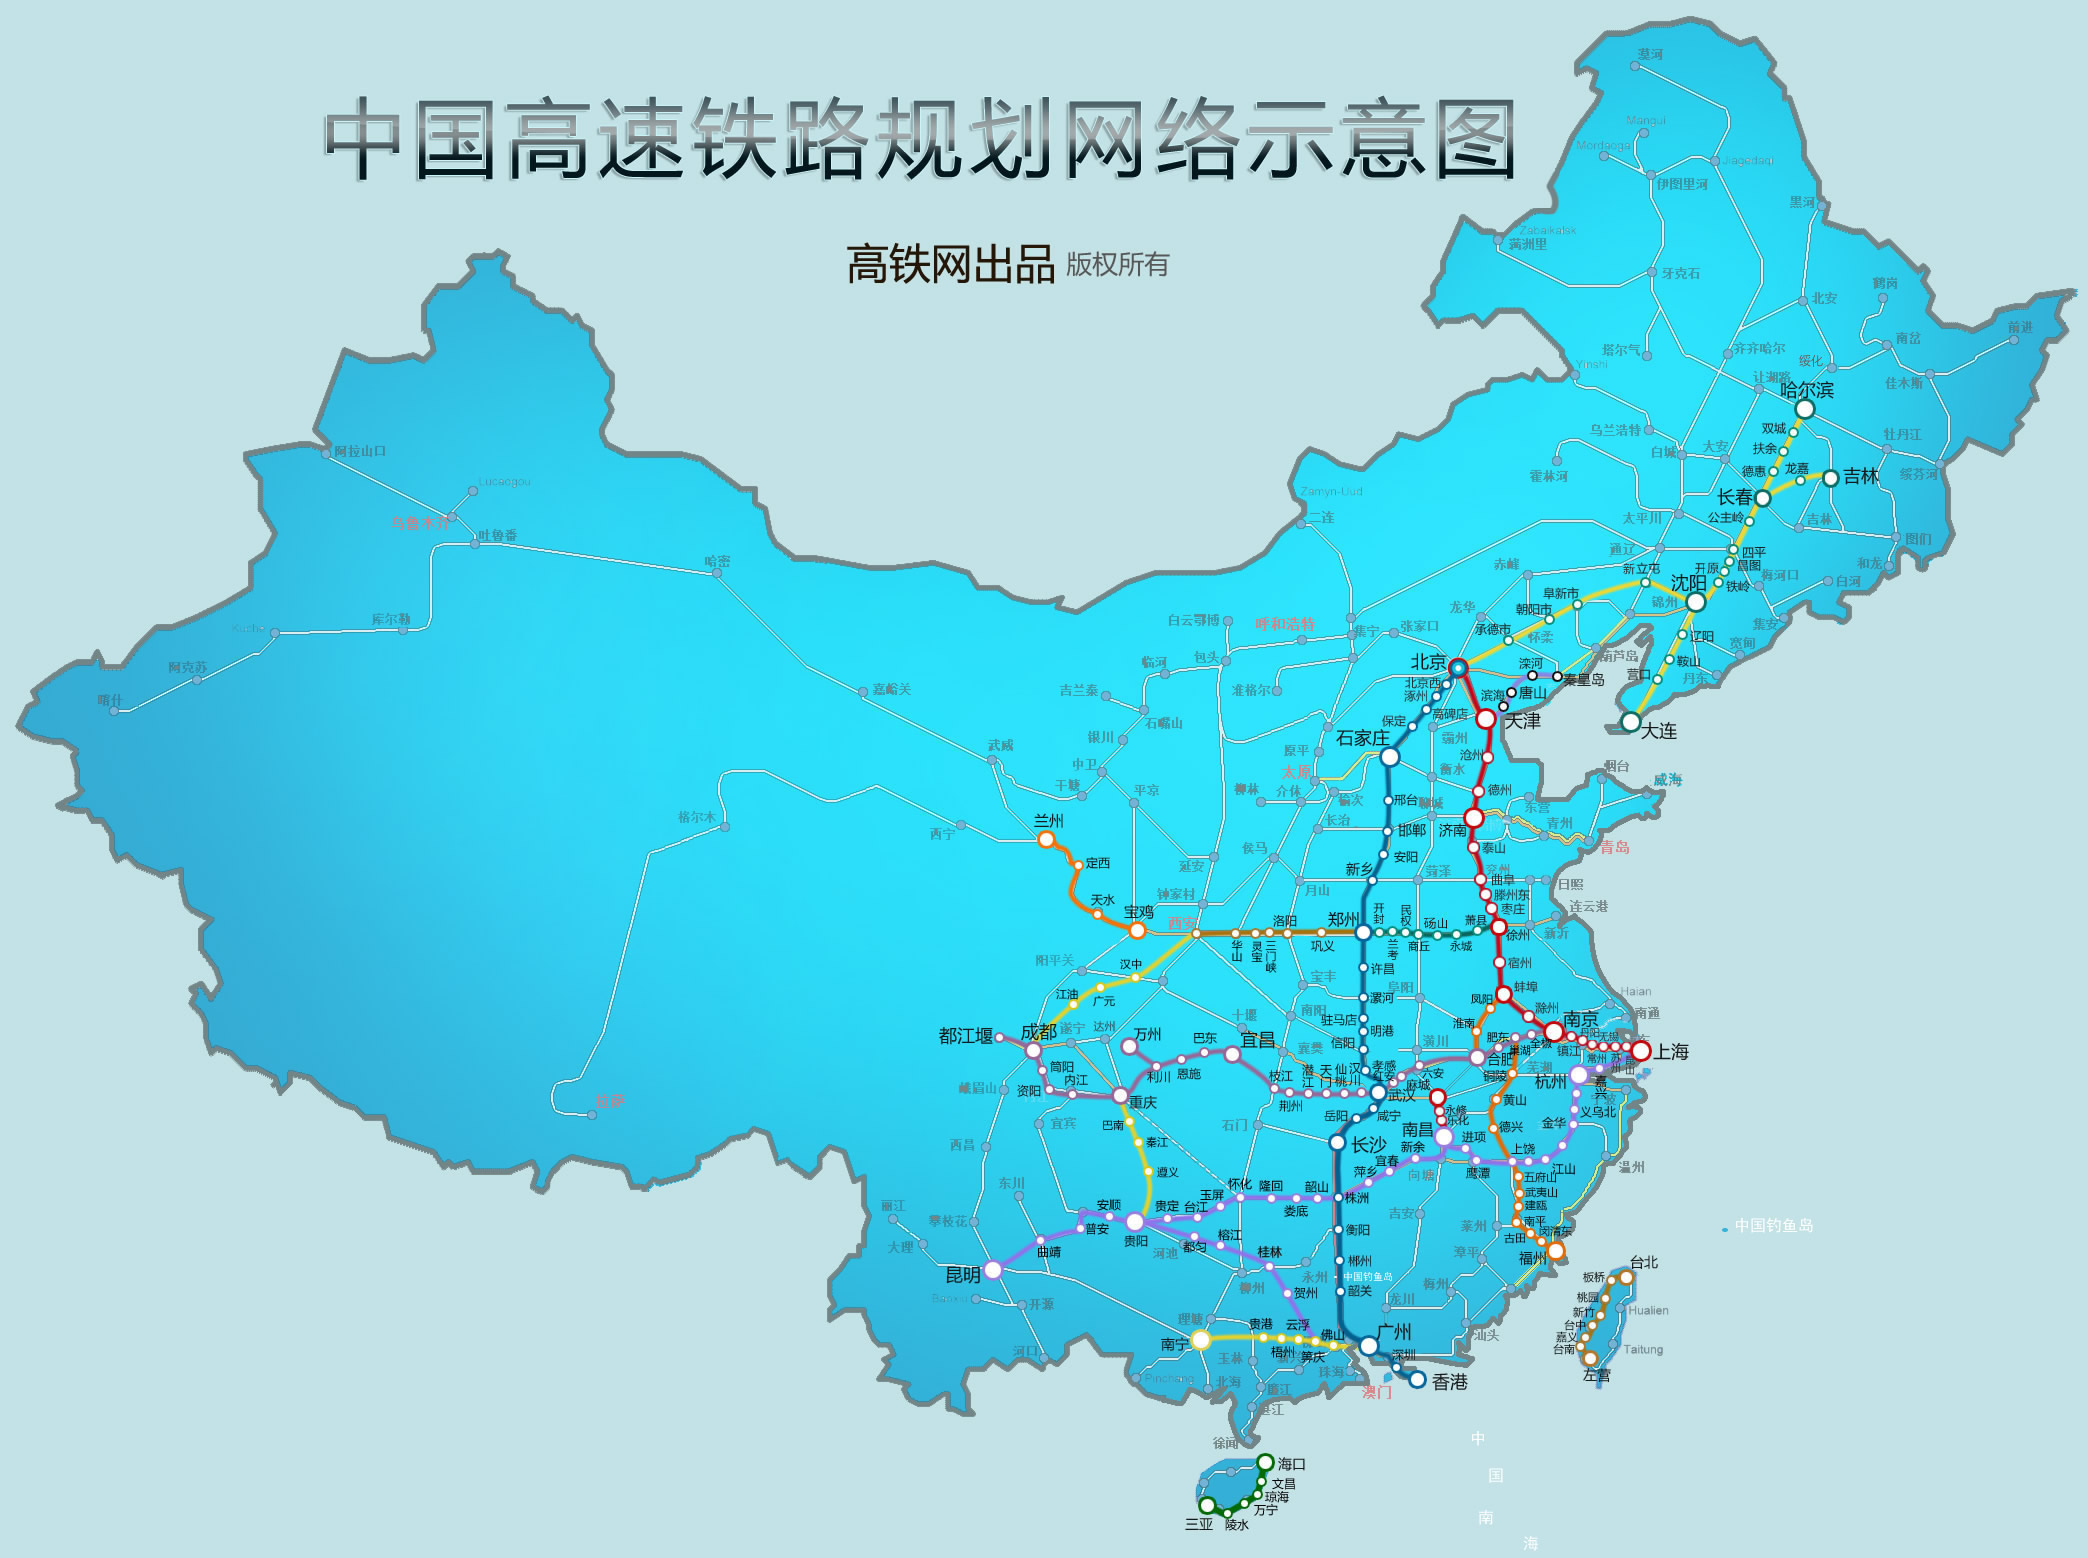 激动人心的中国八纵八横高铁网线路图-2030年